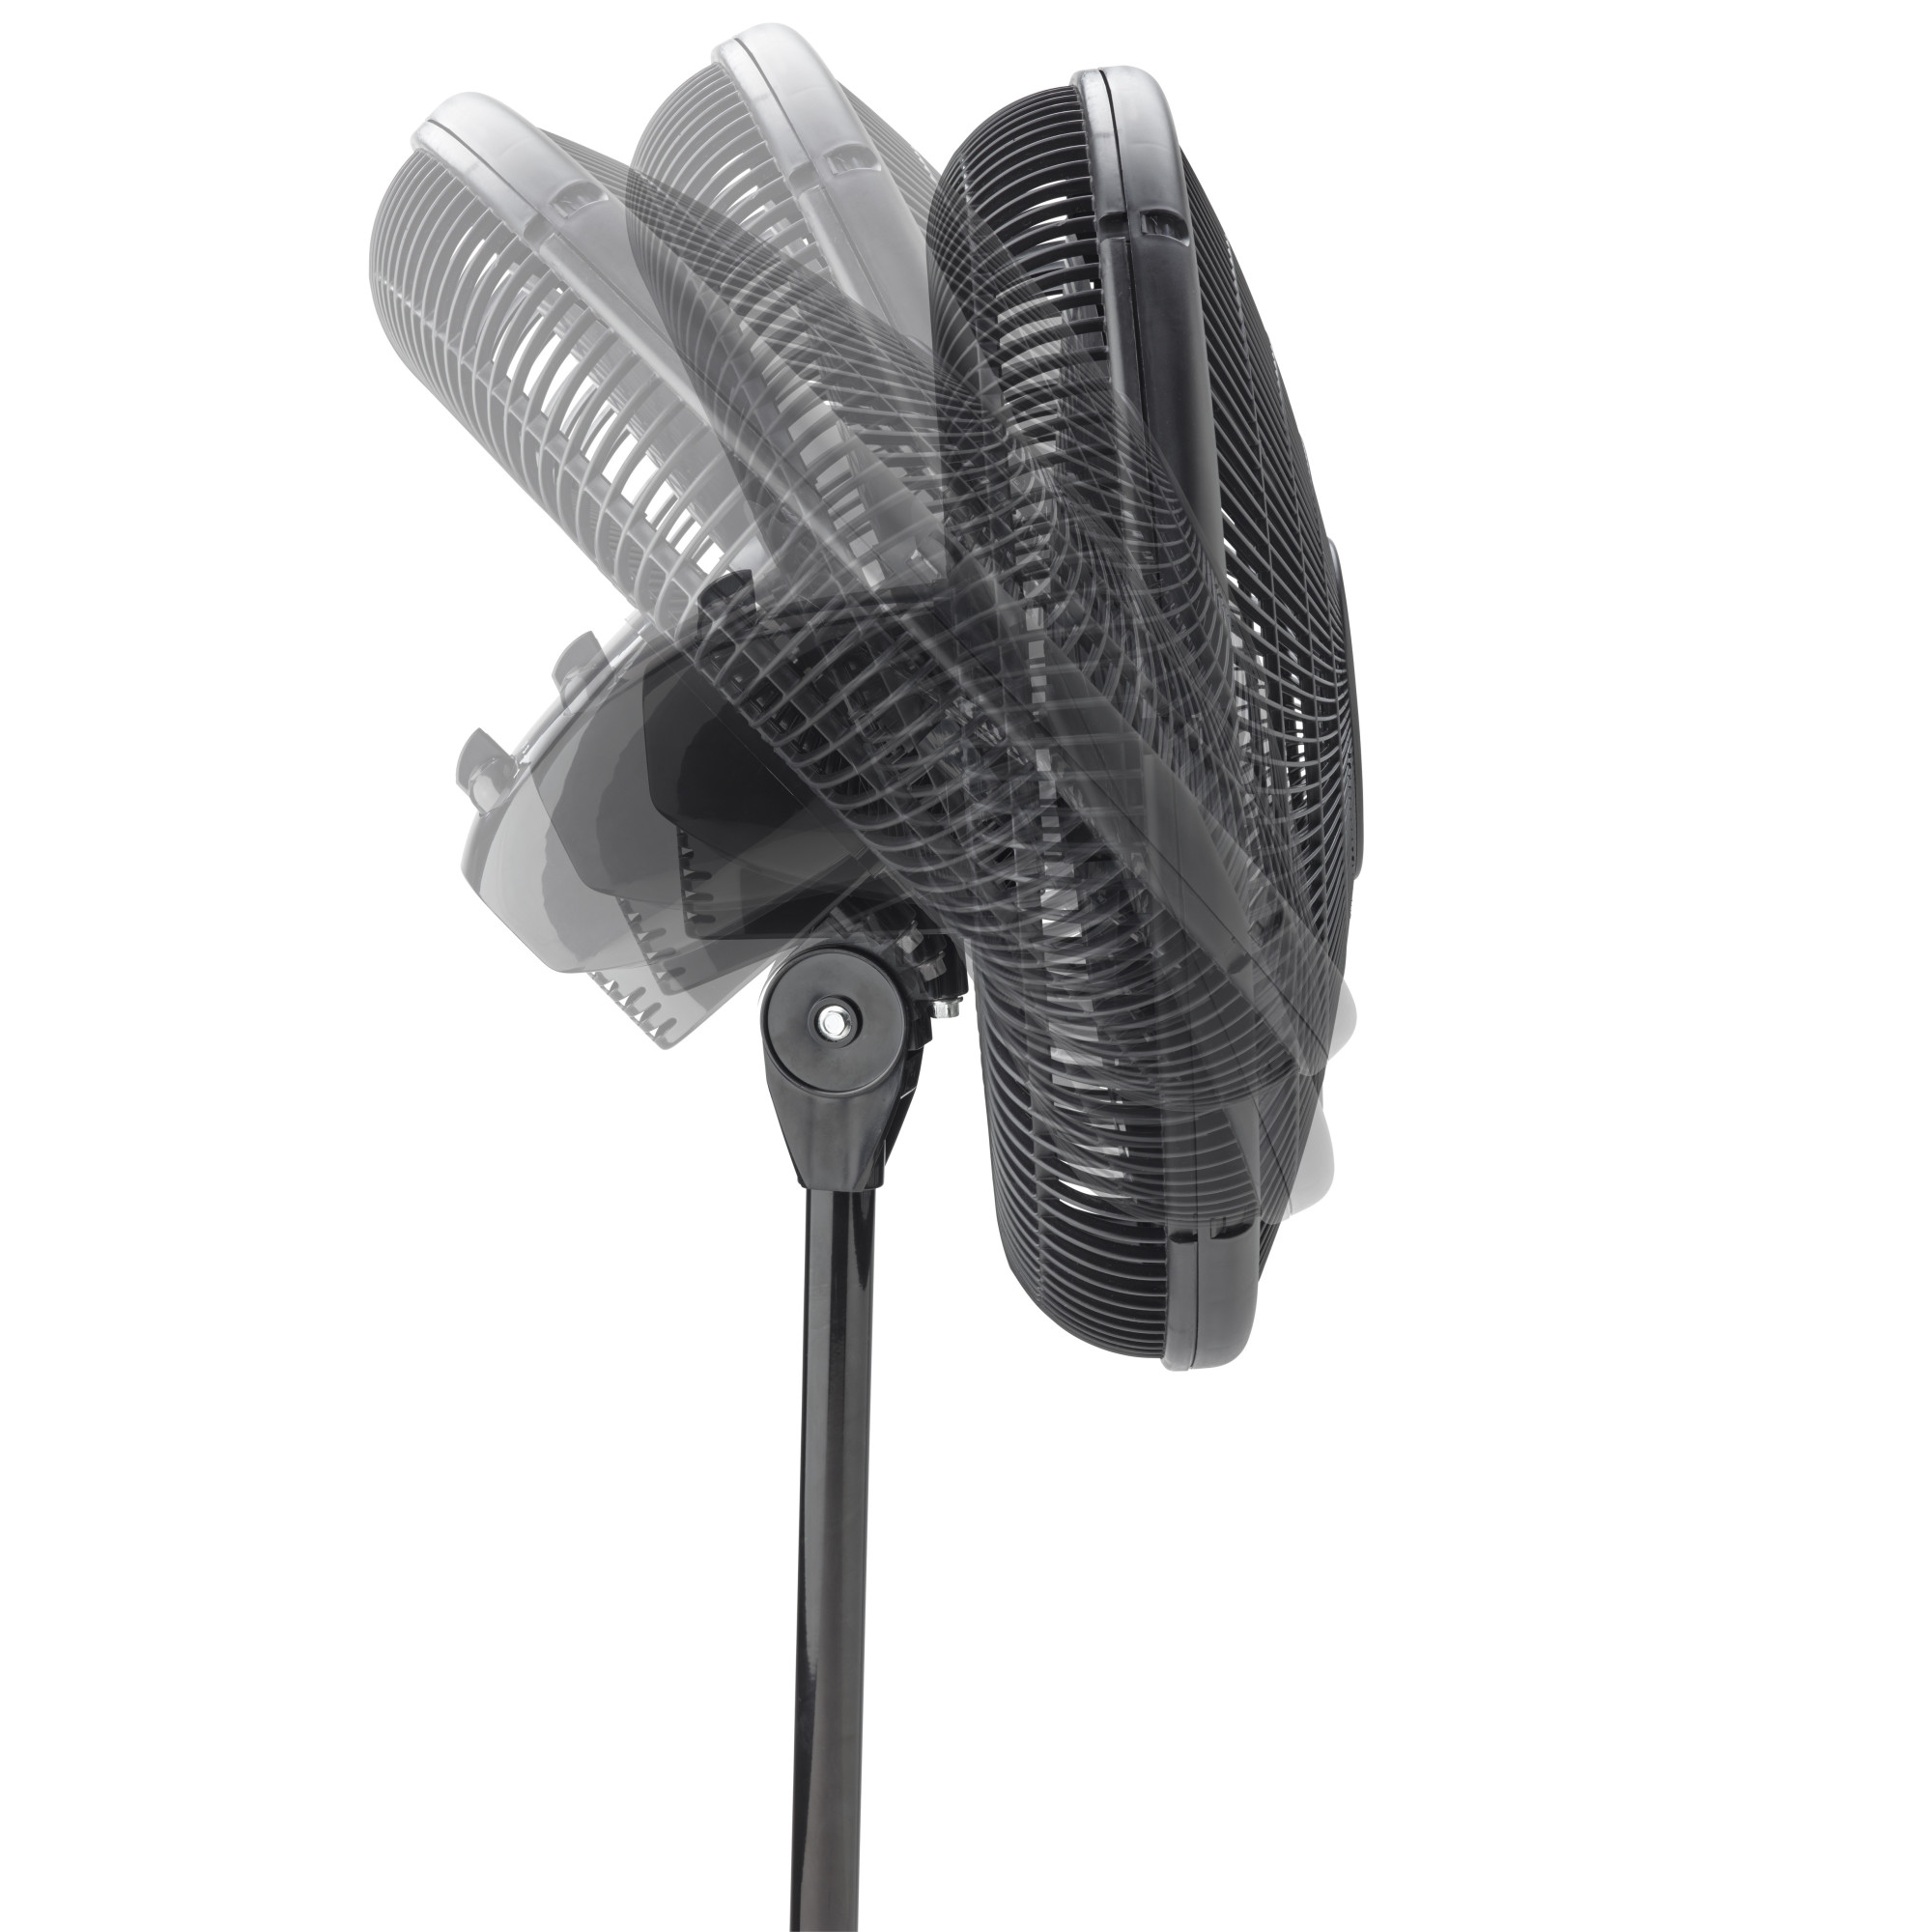 Lasko 16" Oscillating Adjustable Pedestal Fan with 3-Speeds, 47" H, Black, S16500, New - image 10 of 12